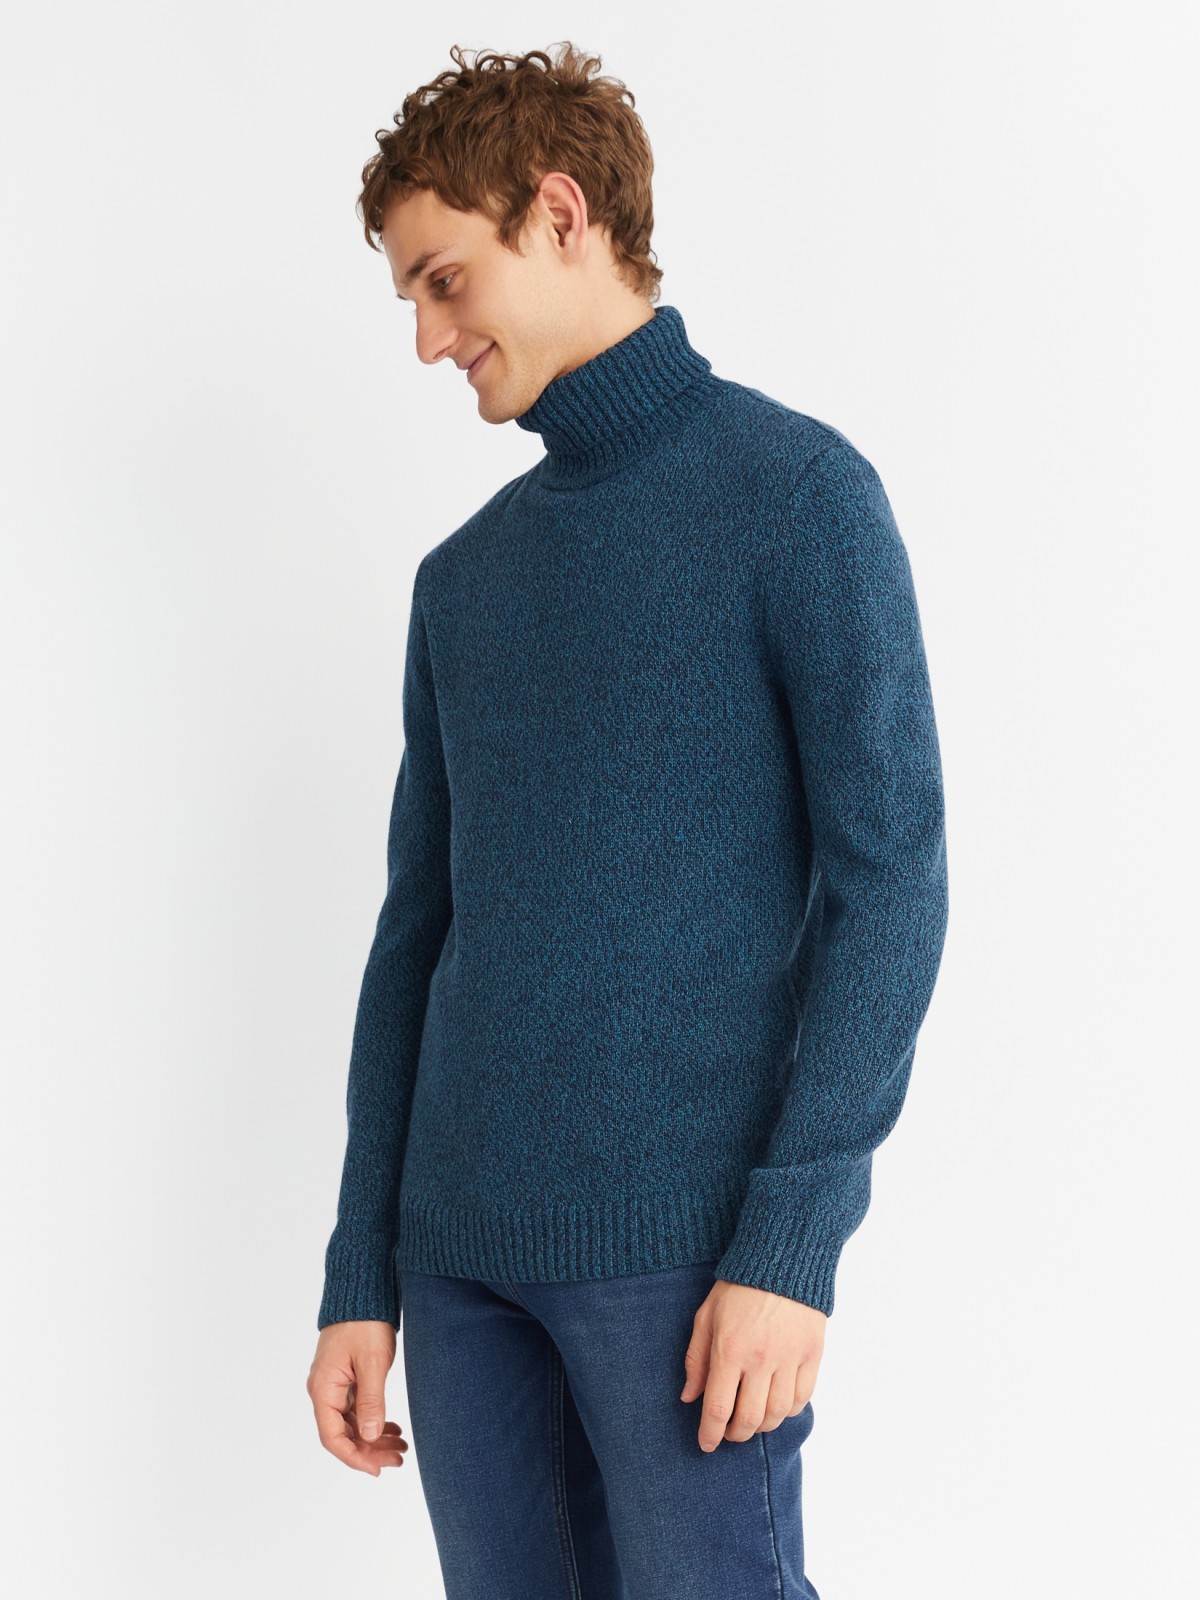 Вязаная шерстяная водолазка-свитер с горлом zolla 013436163012, цвет темно-бирюзовый, размер S